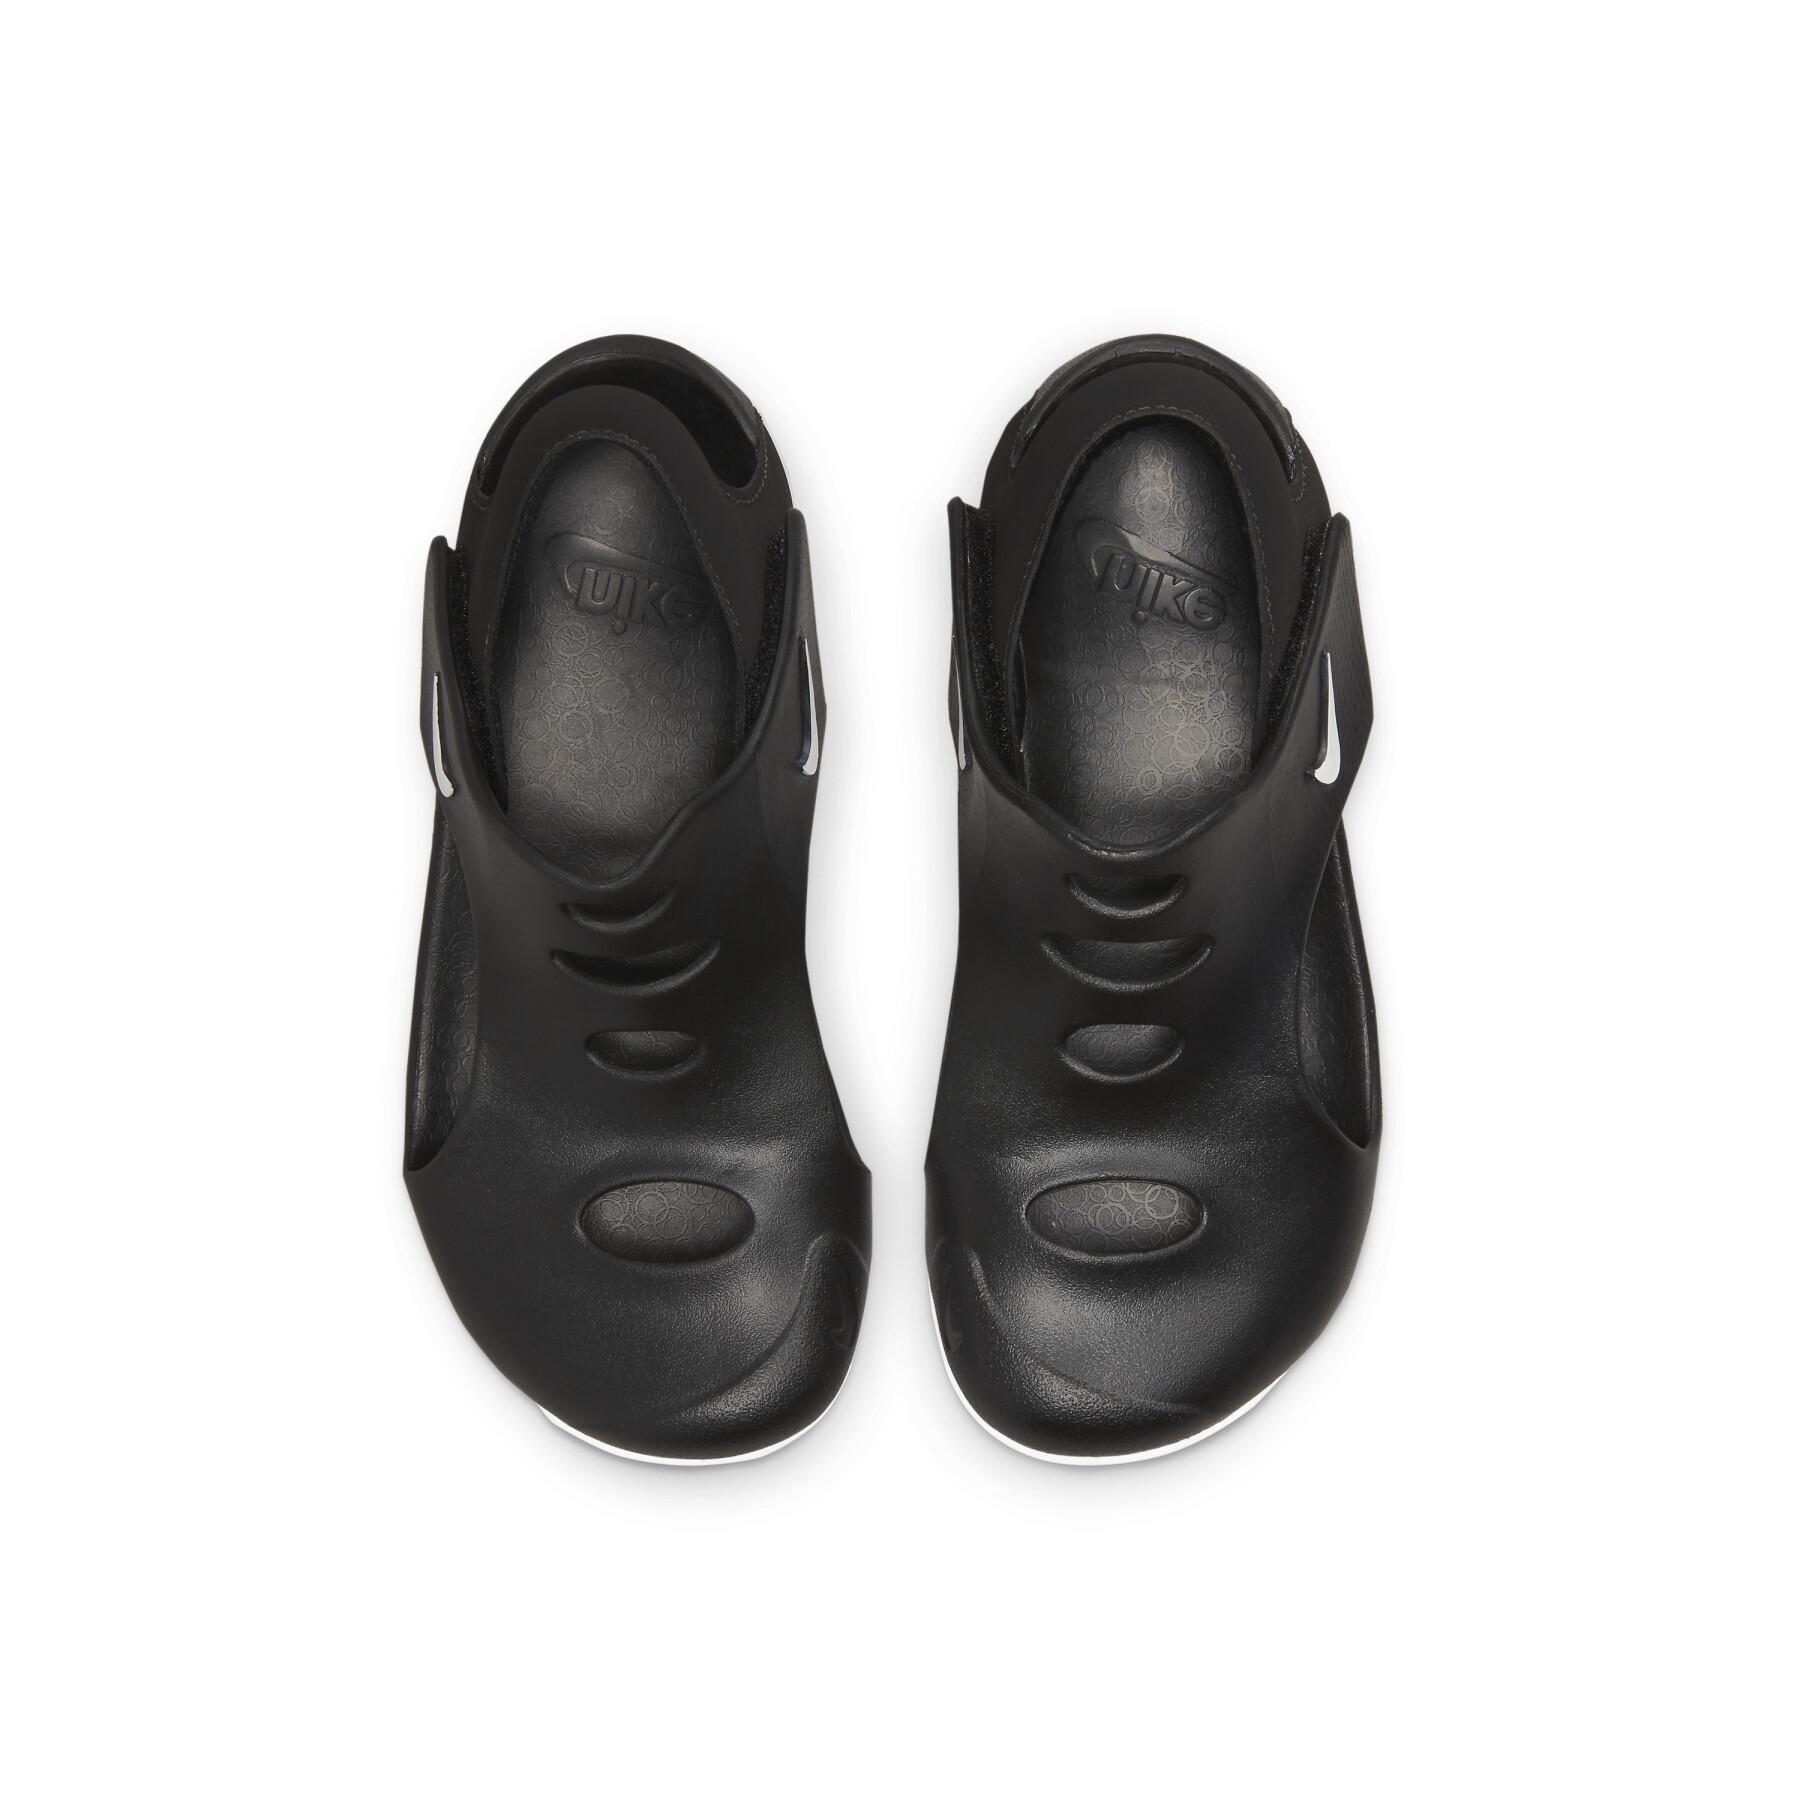 Sandały dla dzieci Nike Sunray Protect 3